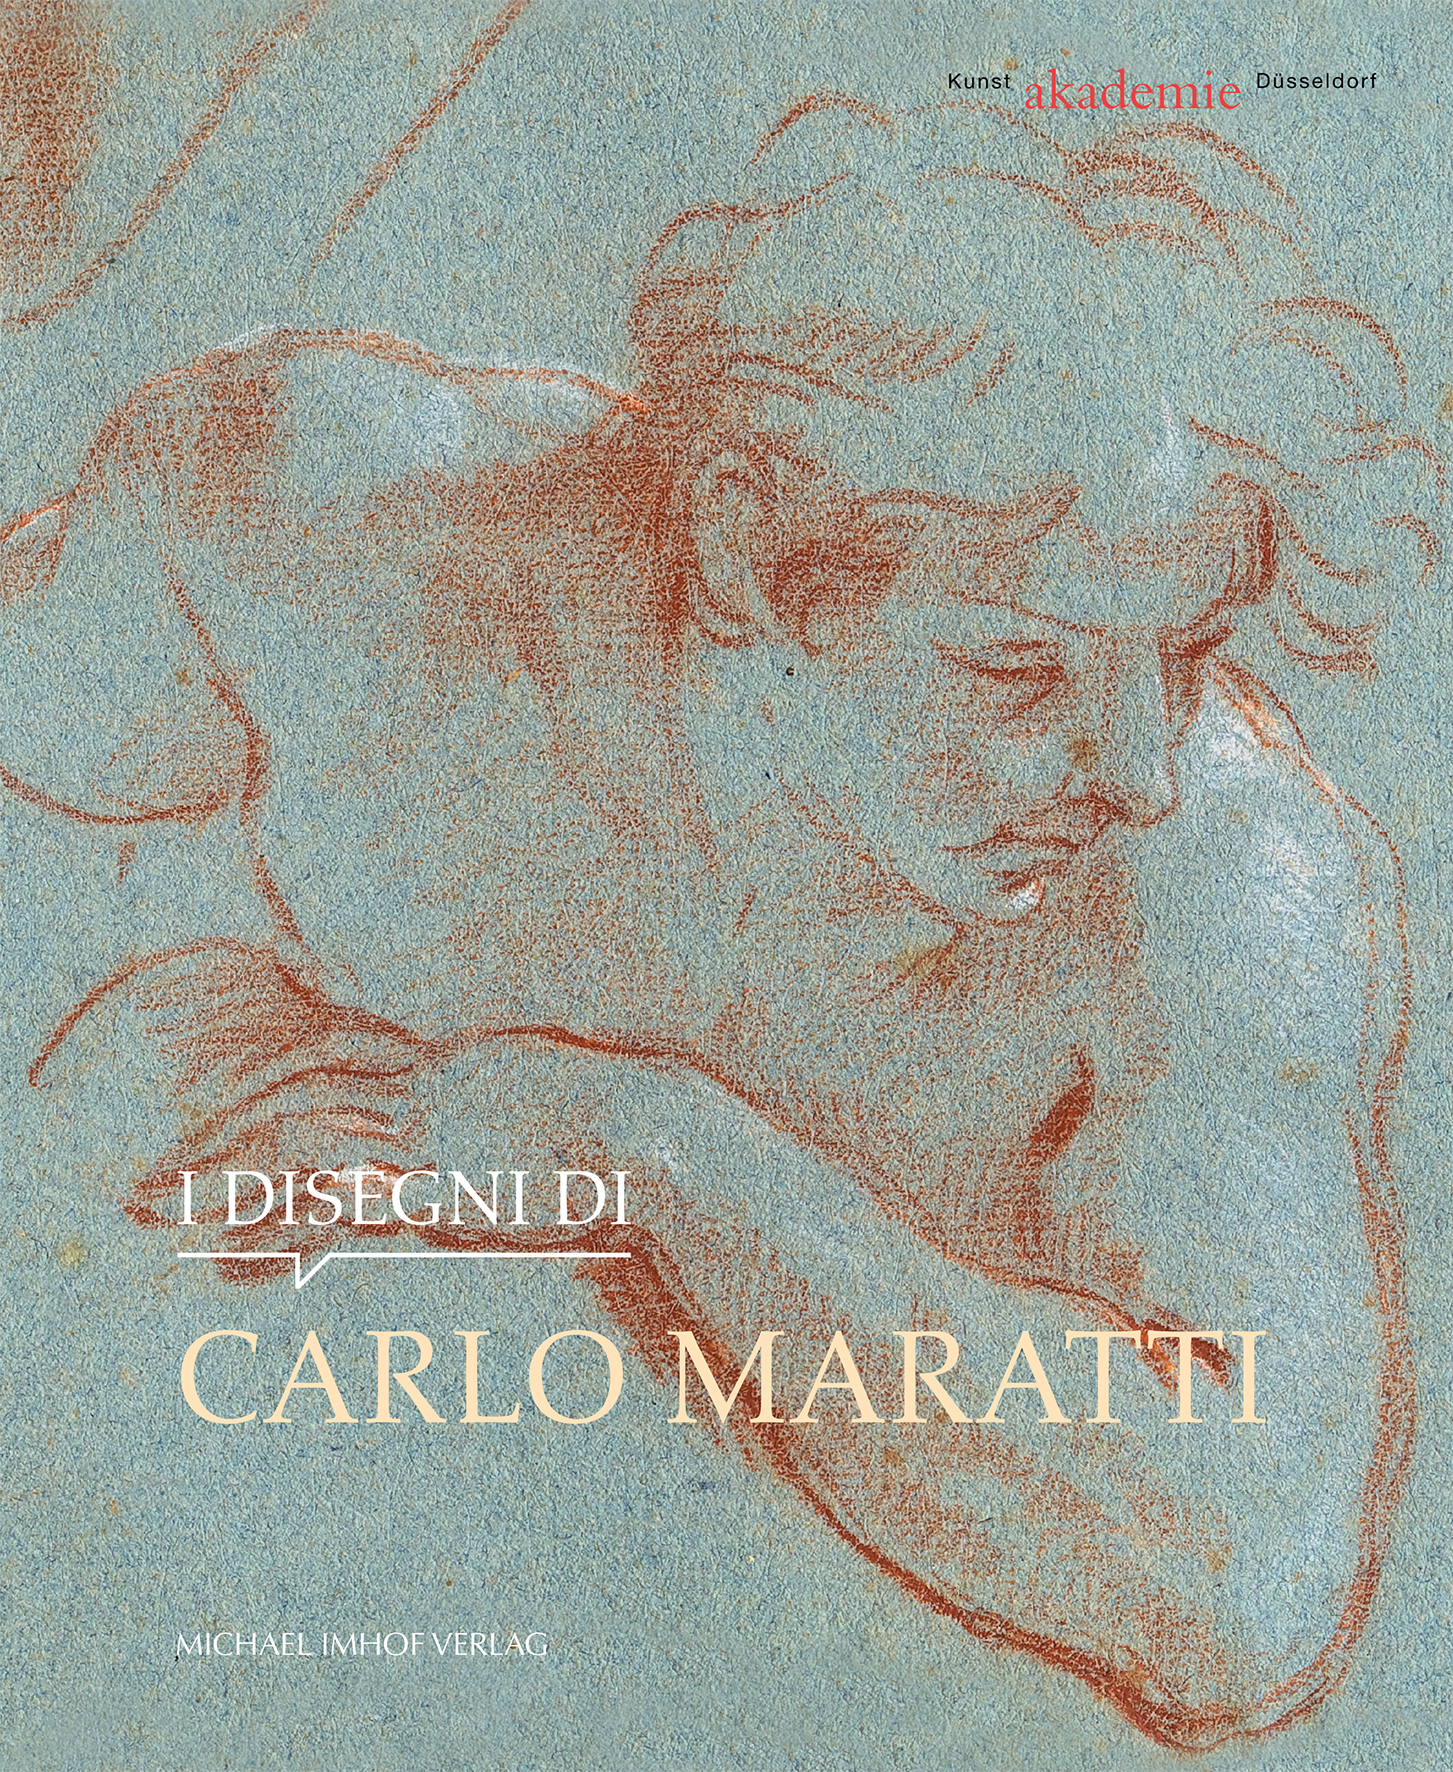 Maratti Umschlag italienisch.qxp_Layout 1